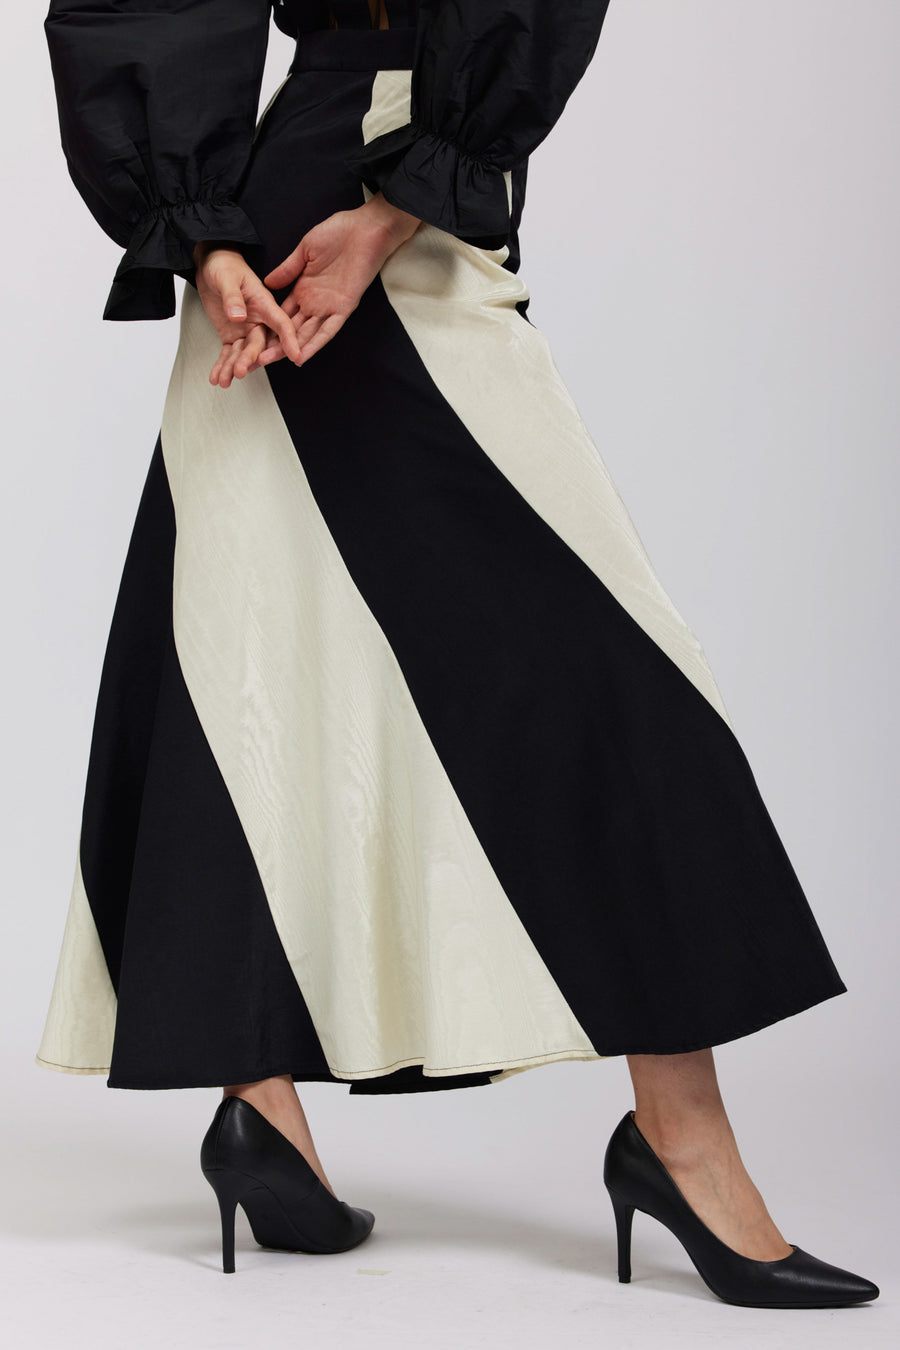 BATSHEVA - Cera Skirt in Cream & Black Moiré